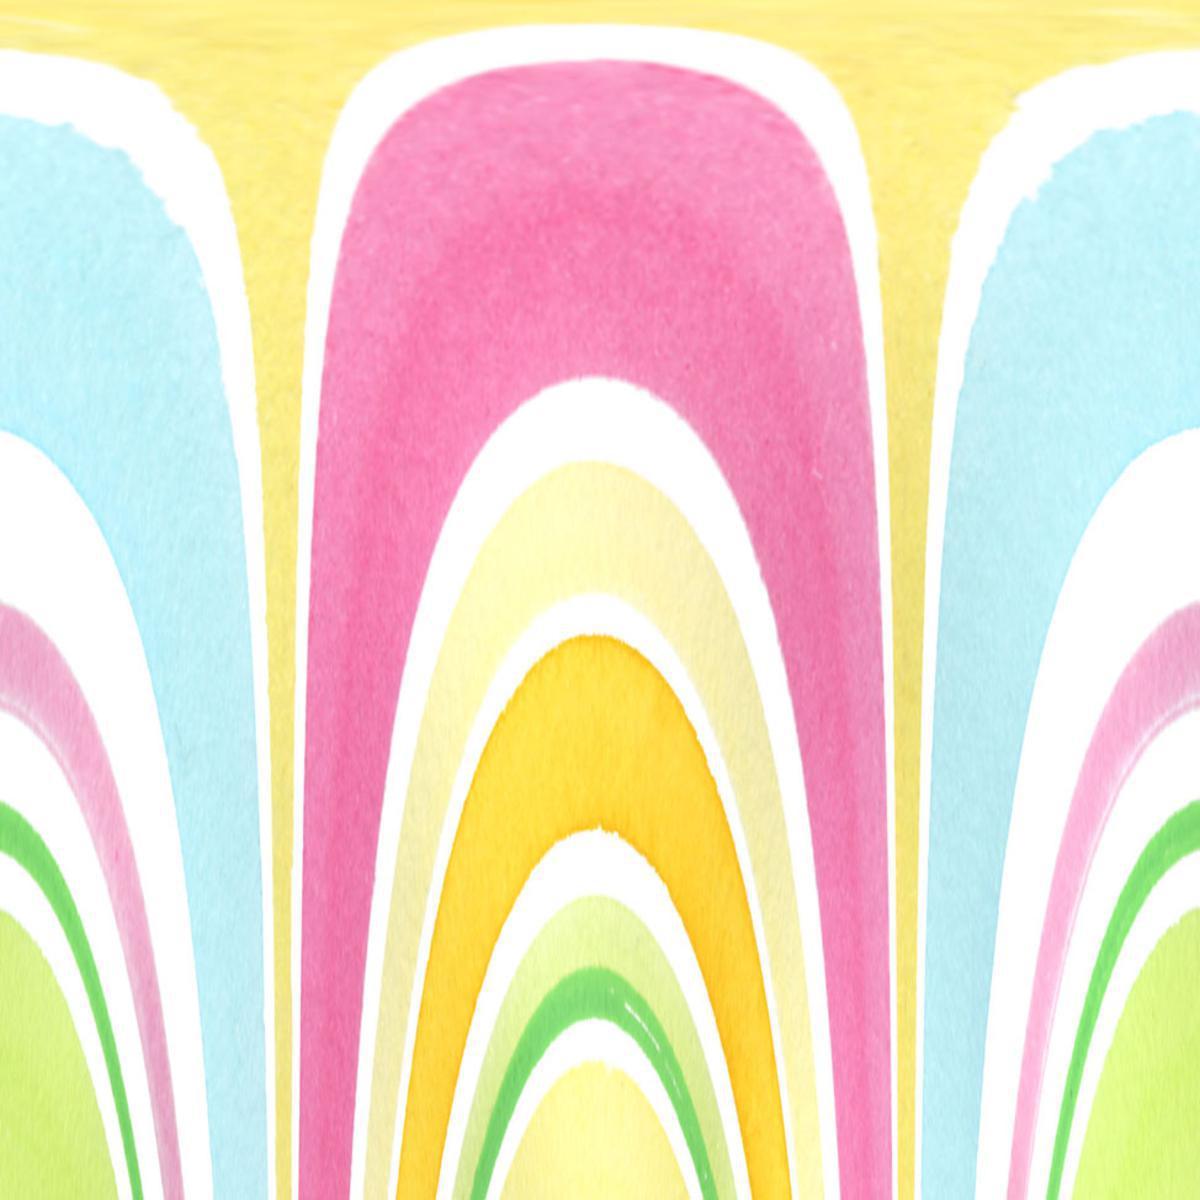 Lot de 20 serviettes imprimées Lollypop - 33 x 33 cm - Ouate de Cellulose - Multicolore